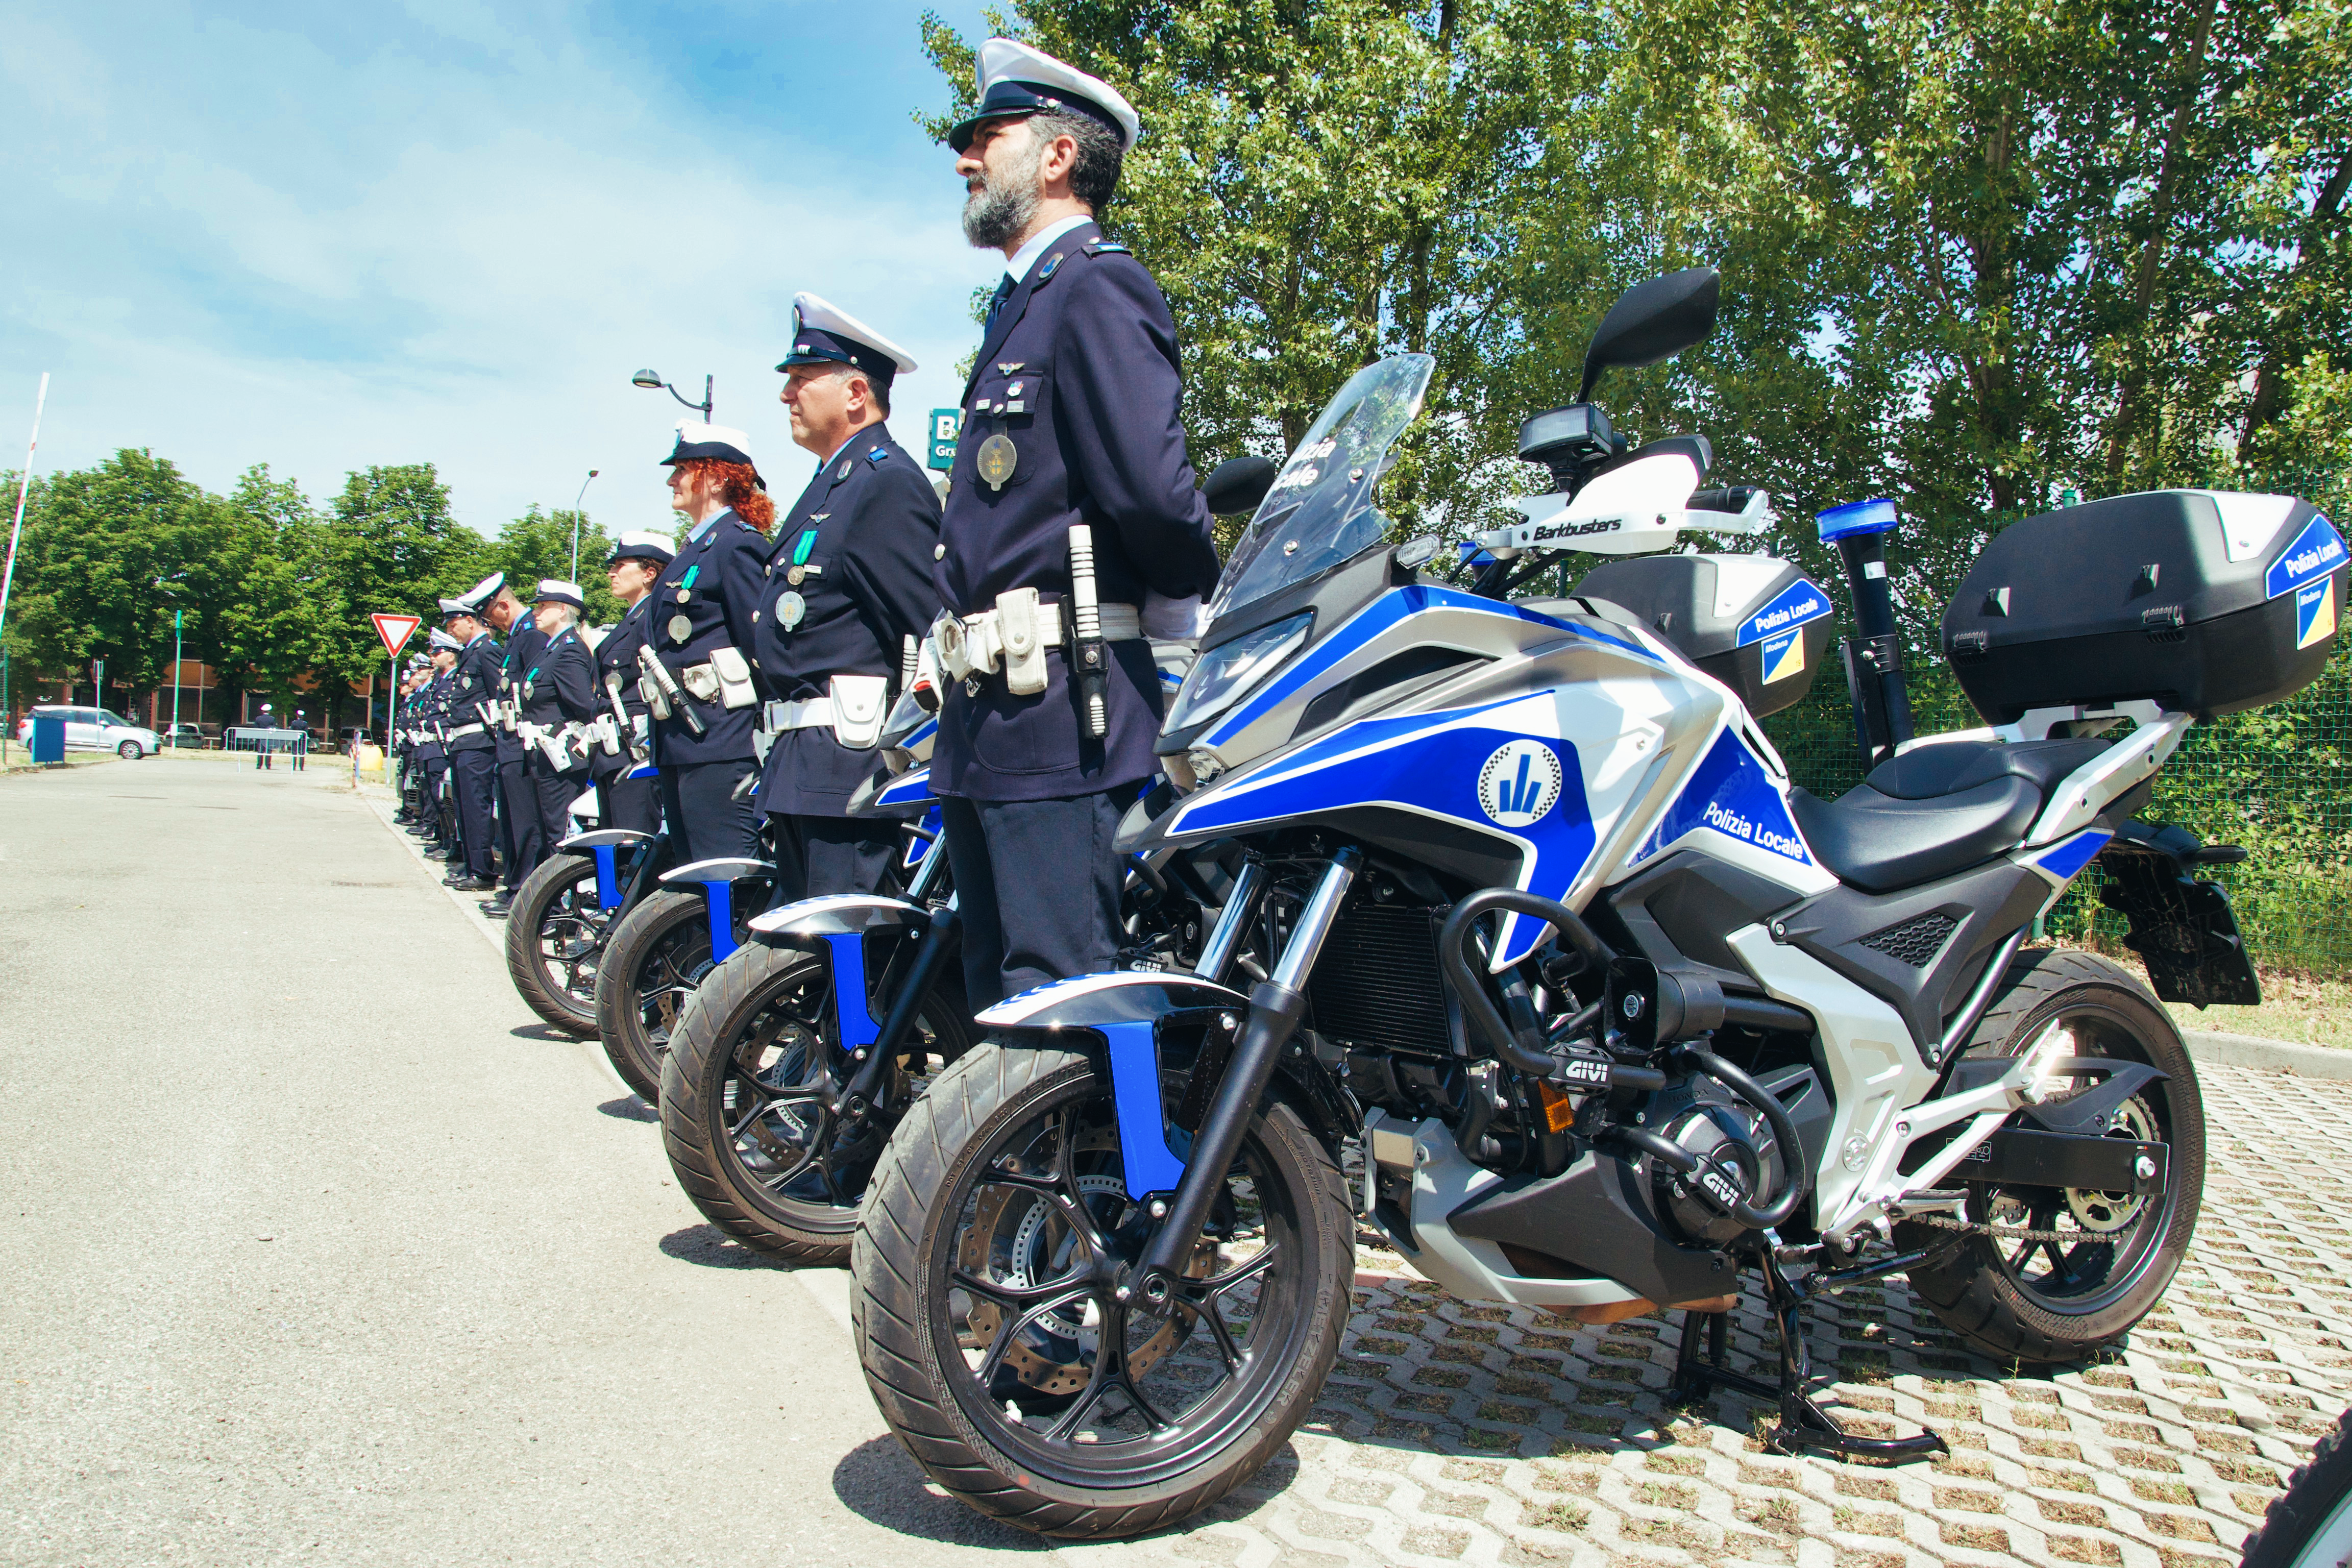  Polizia Locale, rafforzare e ripensare le sicurezze urbane (VIDEO)